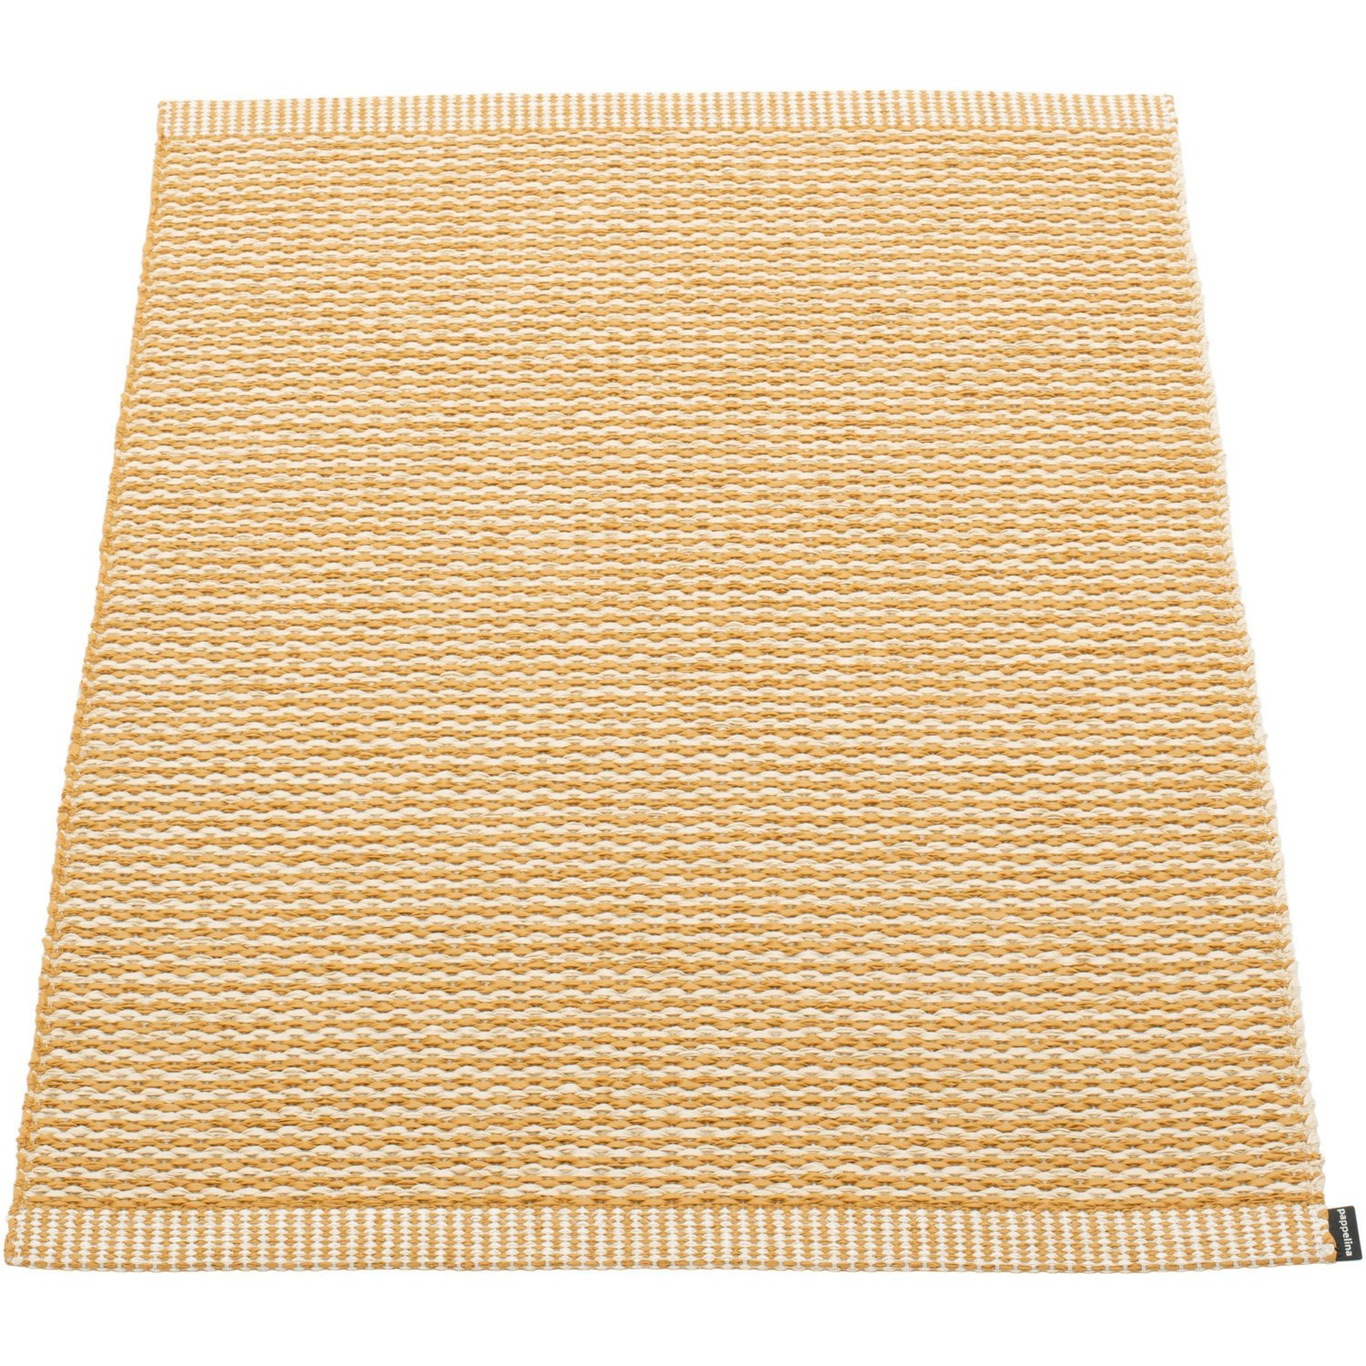 Mono Teppich Ocker/Cremefarben, 60x85 cm